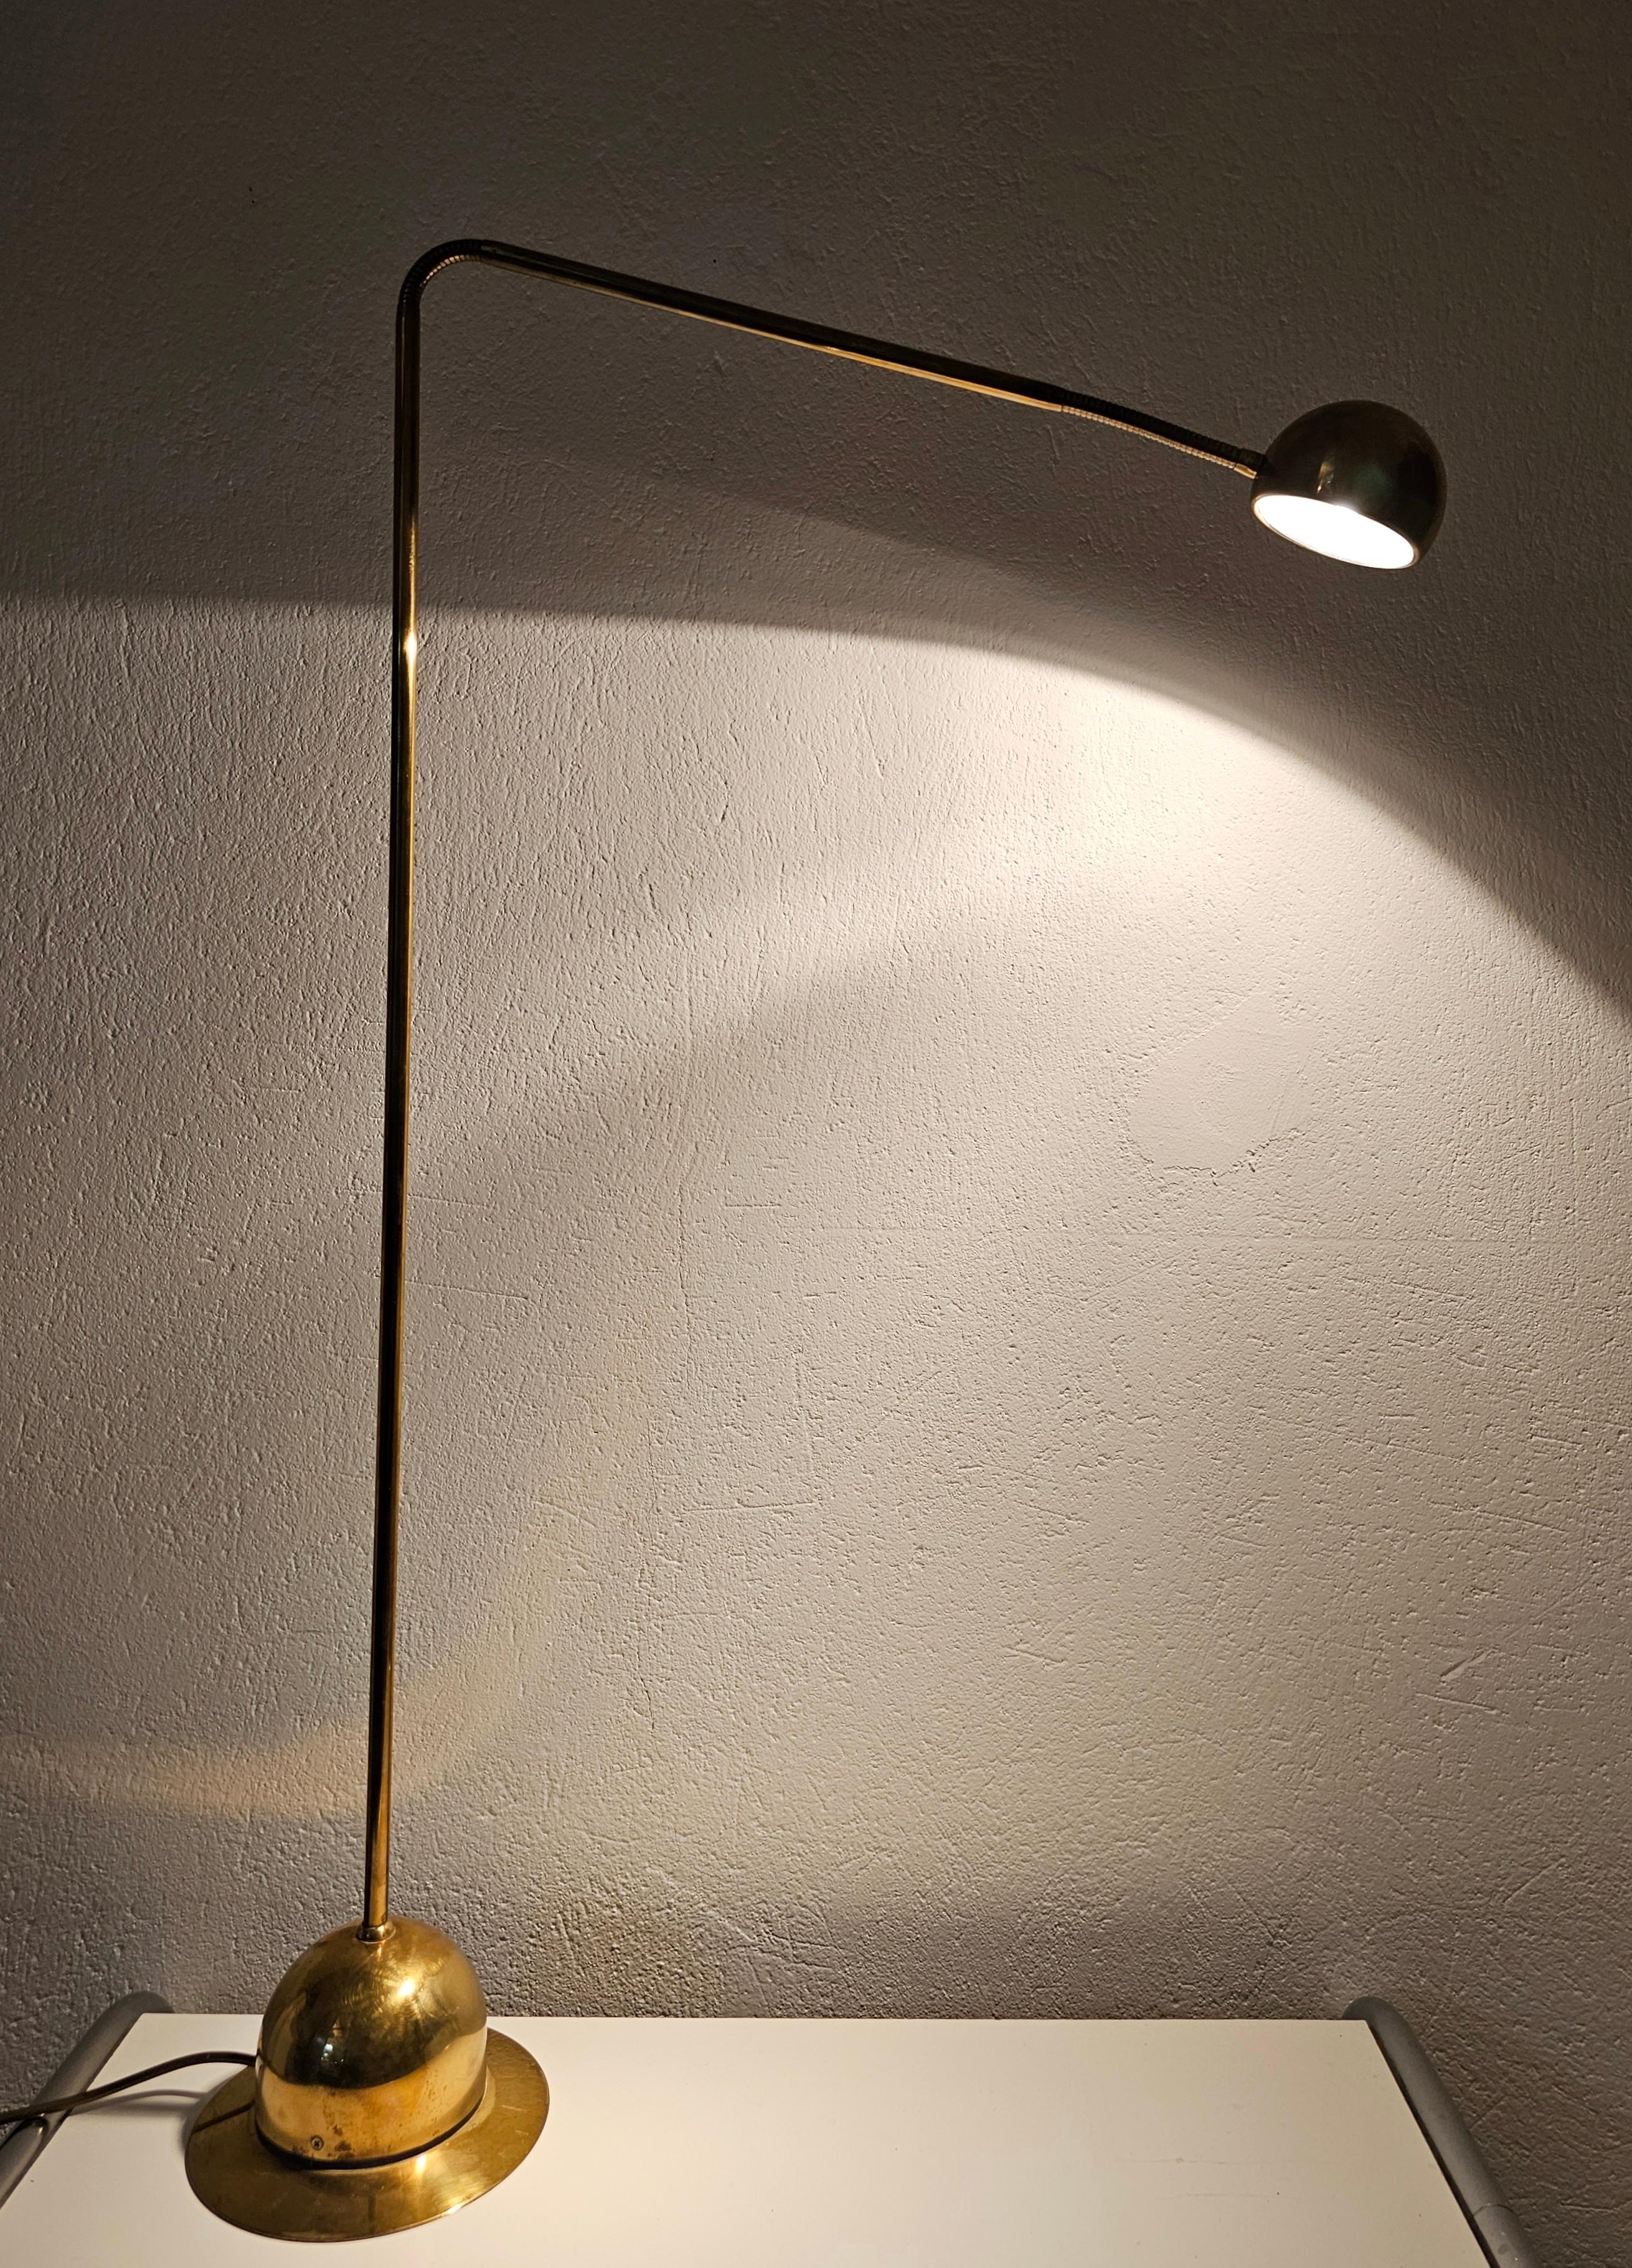 Adjustable Gooseneck Brass Floor Lamp by Fischer Leuchten, Germany 1960s For Sale 1